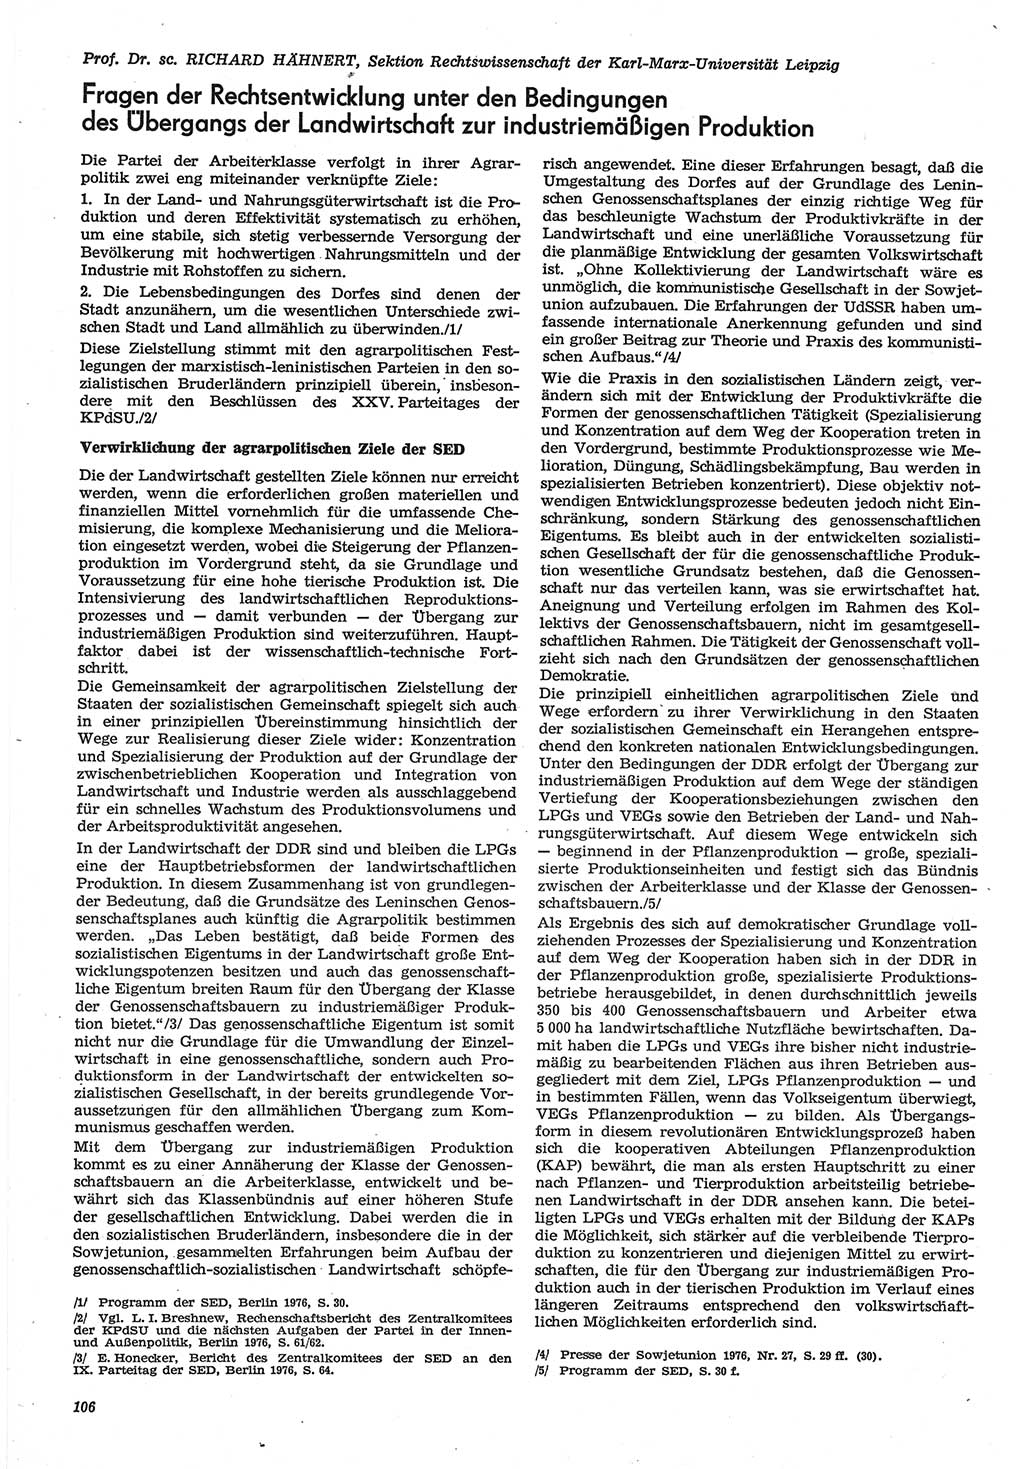 Neue Justiz (NJ), Zeitschrift für Recht und Rechtswissenschaft-Zeitschrift, sozialistisches Recht und Gesetzlichkeit, 31. Jahrgang 1977, Seite 106 (NJ DDR 1977, S. 106)